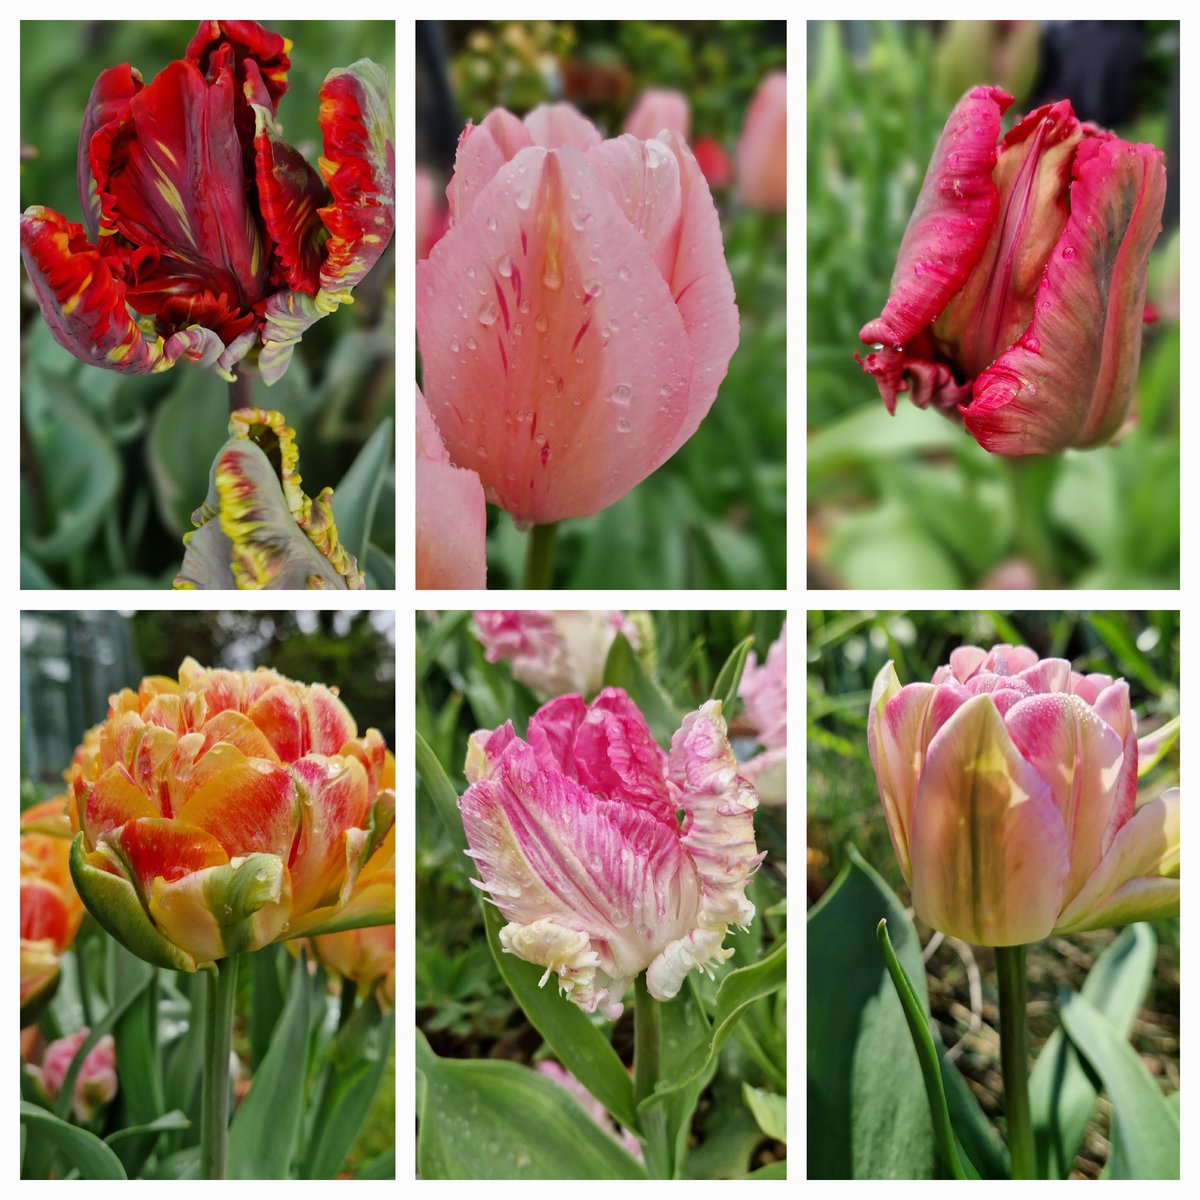 6 amazing tulips #SixOnSaturday #tulip #flowersinmygarden #gardening